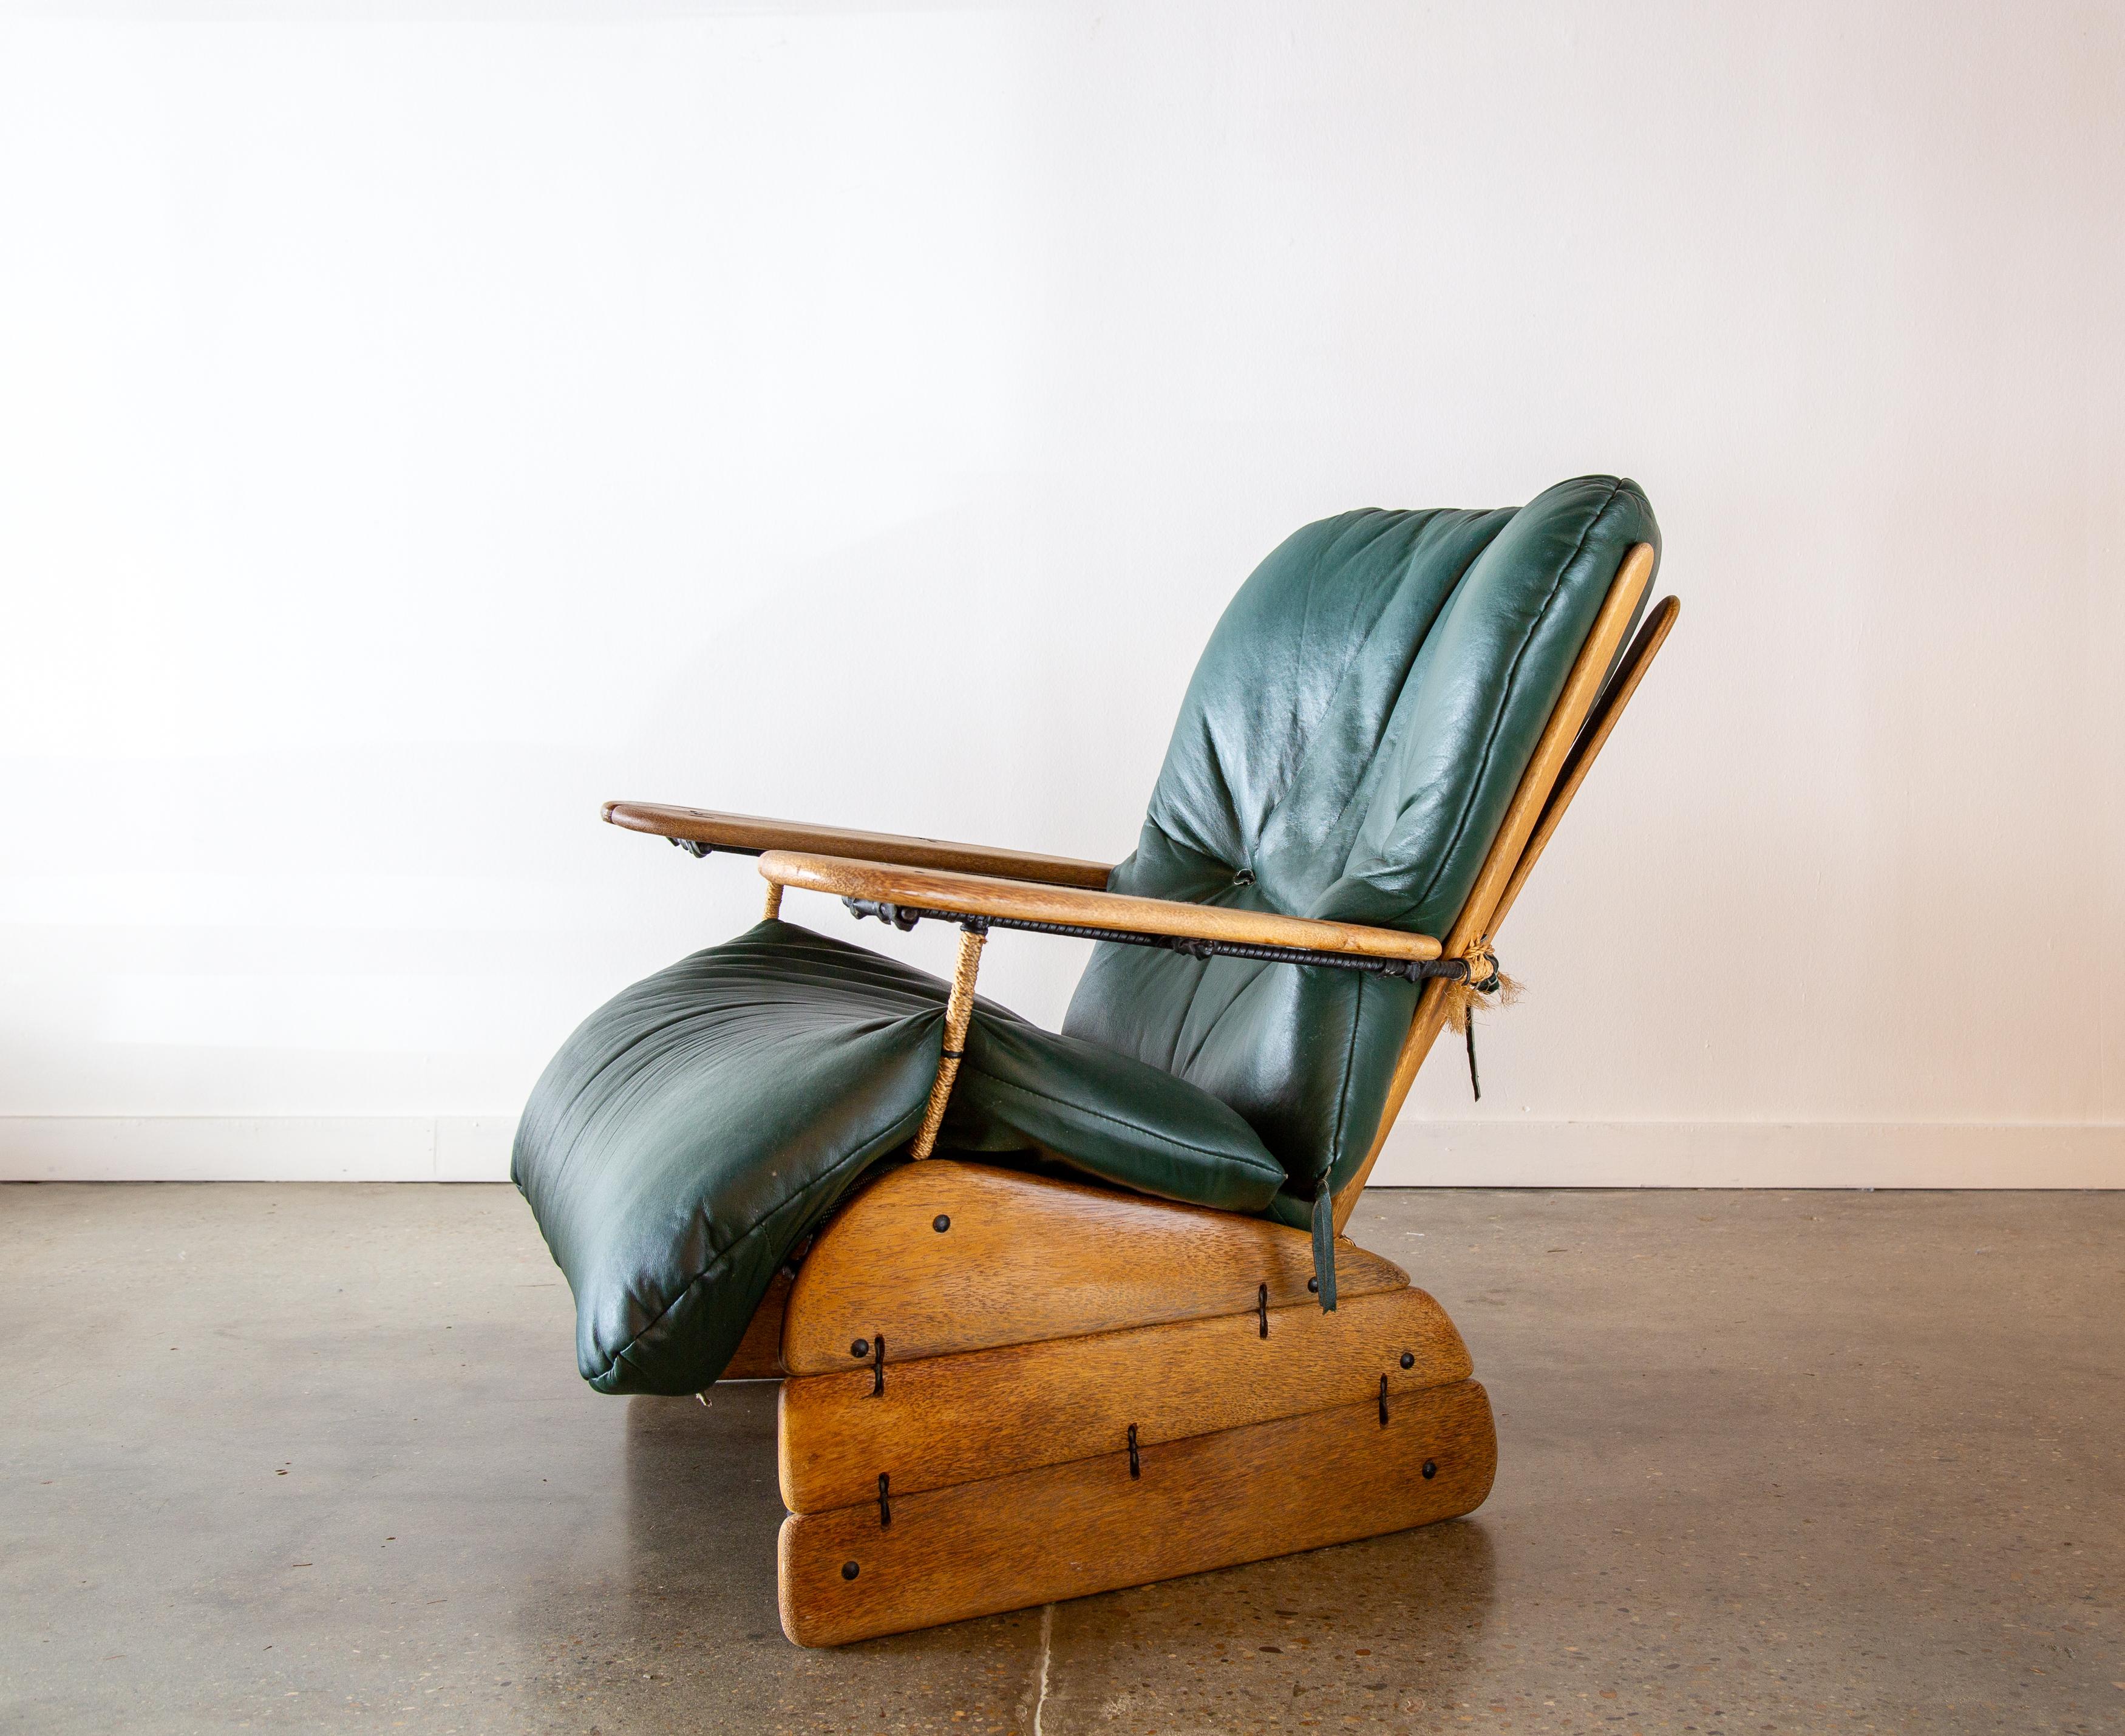 Une étonnante chaise Havana de la Pacific Green Furniture Company, vers le début des années 2000. De superbes vibrations tropicales et côtières modernes. Les accoudoirs exagérés sont parfaits pour poser un verre ou un livre. Le dossier à lattes